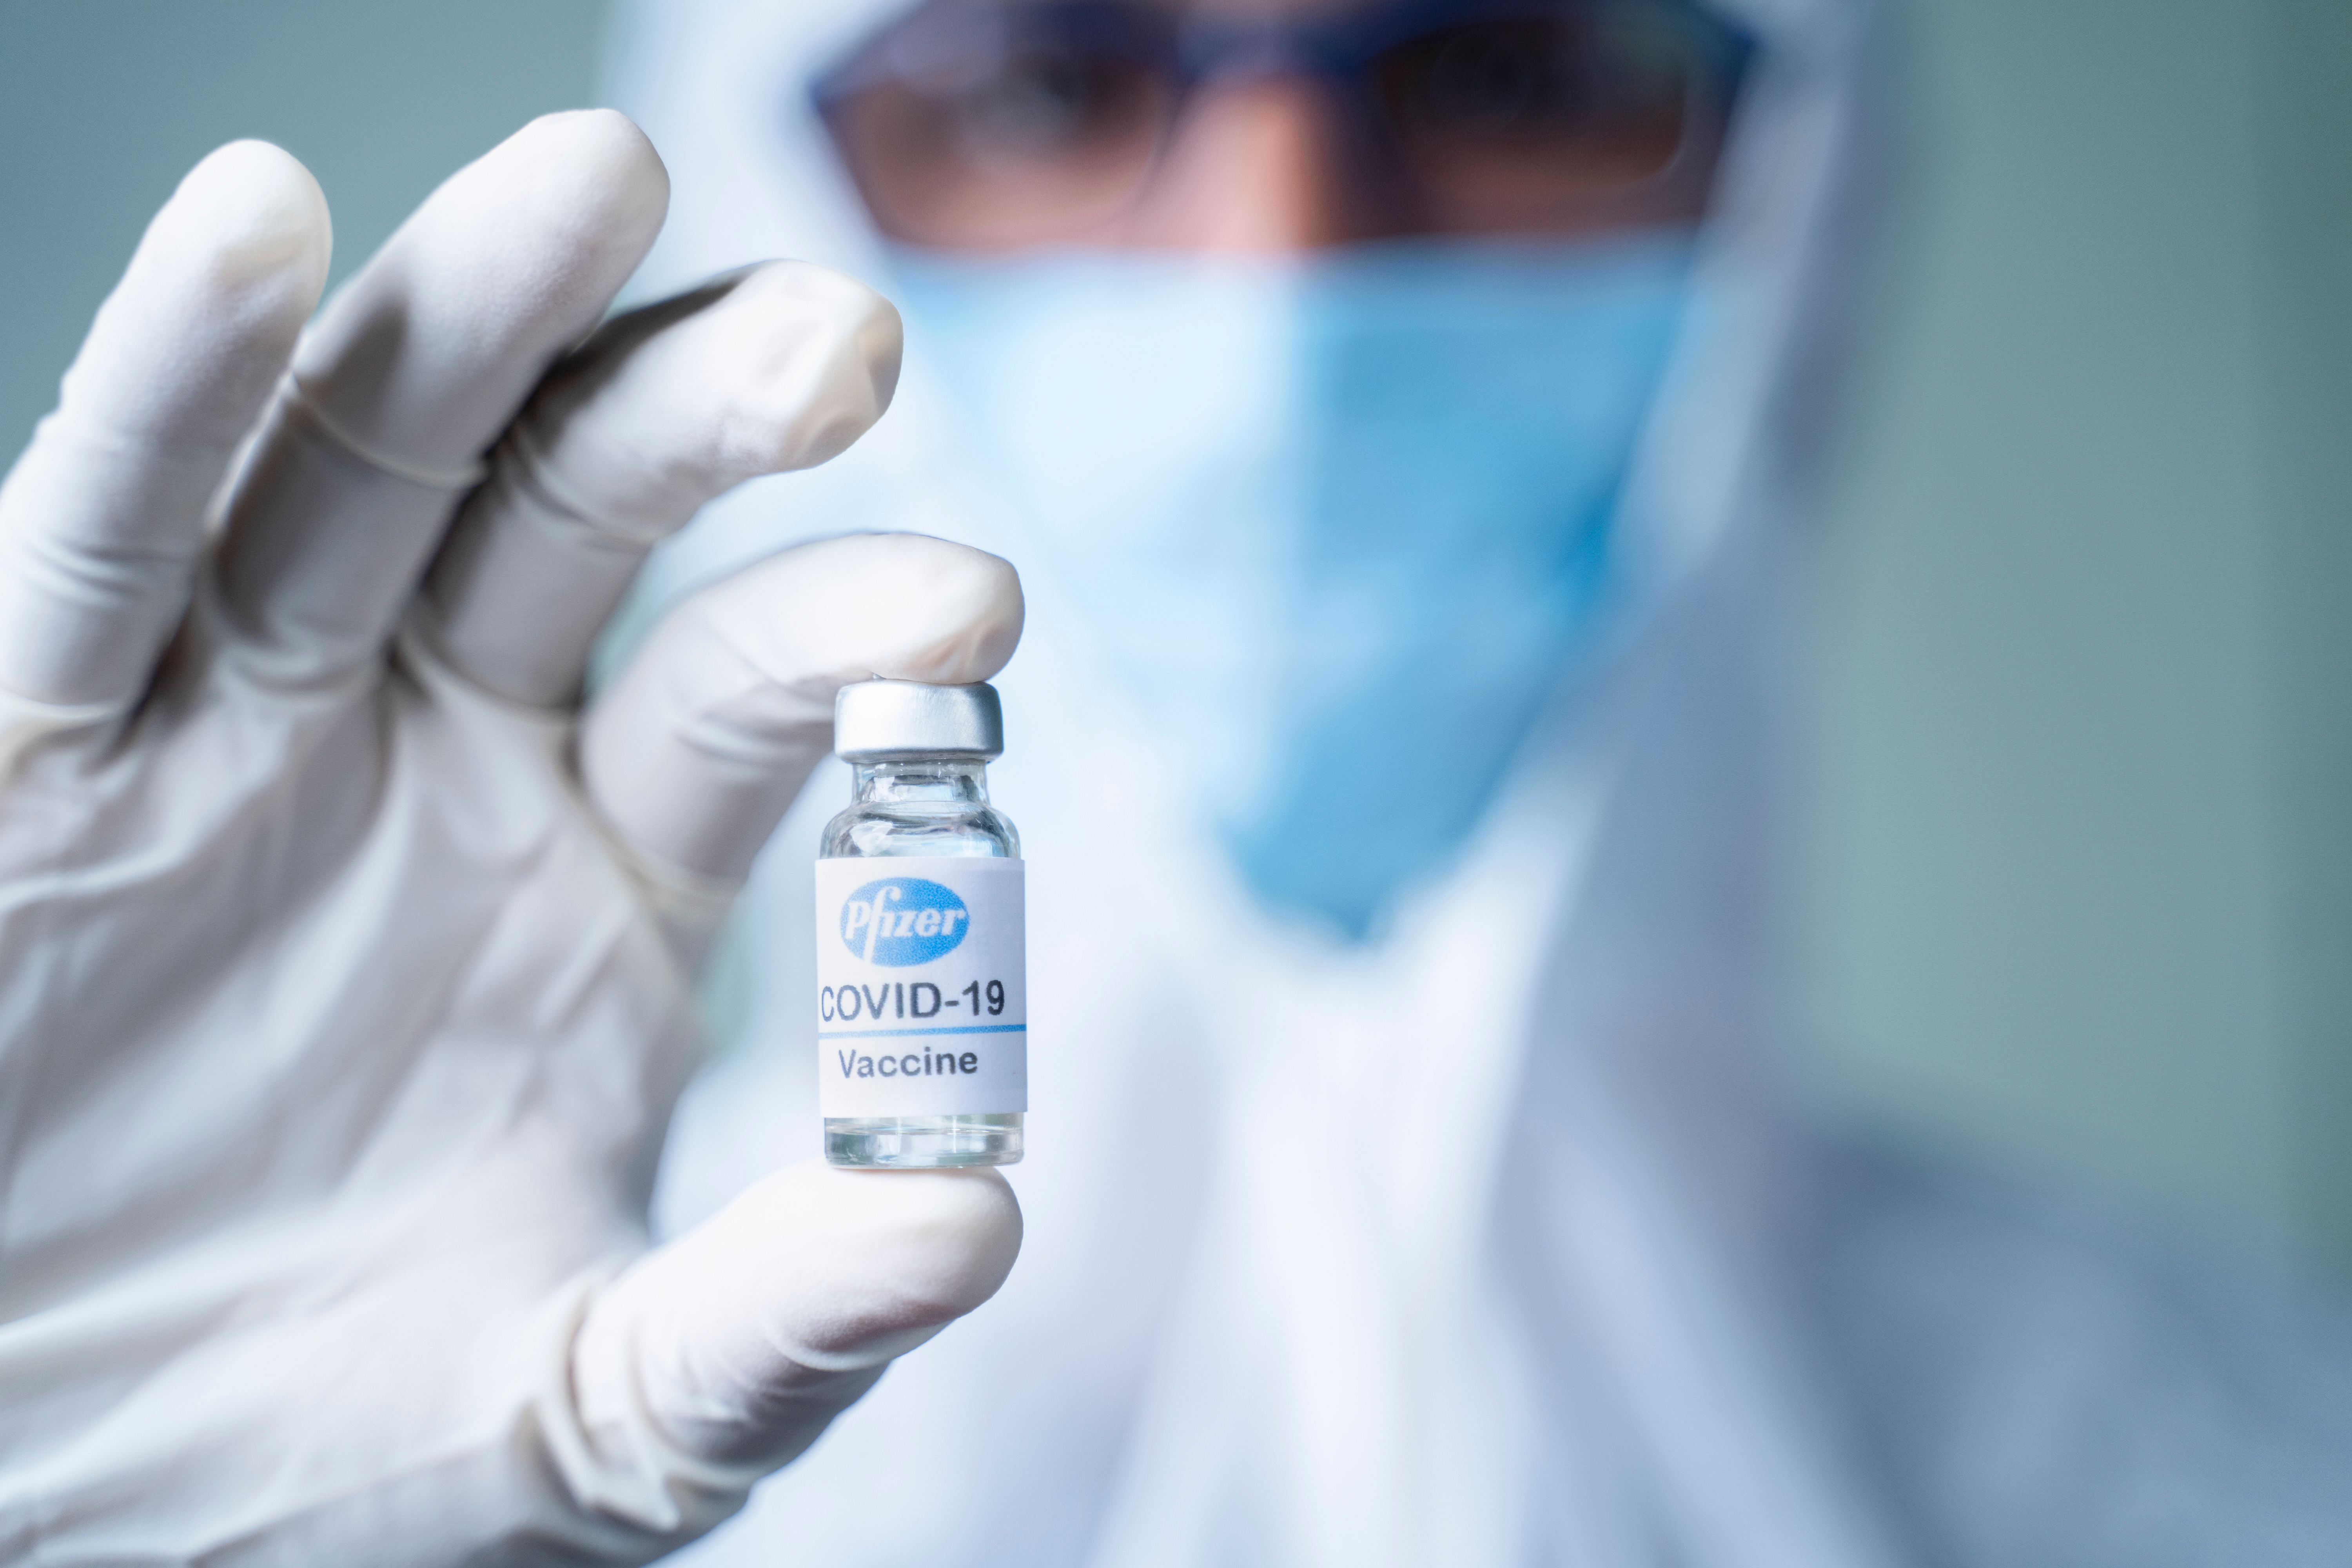 Marea Britanie a decis amânarea până în a 12-a săptămână pentru administrarea celei de-a doua doze de vaccin Pfizer